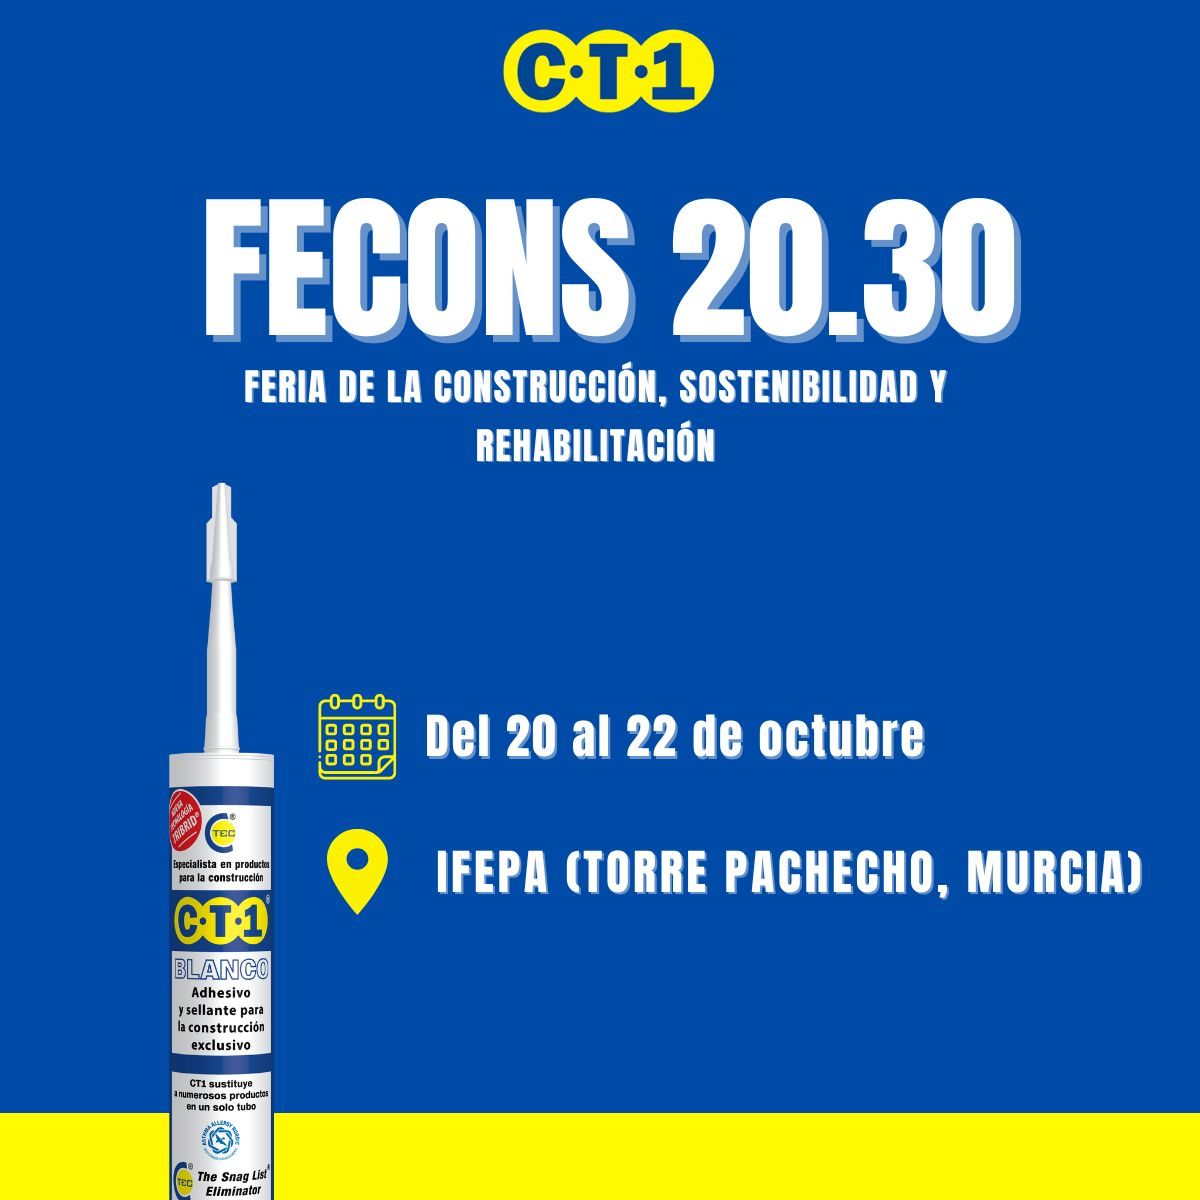 CT1 Fecons 2022